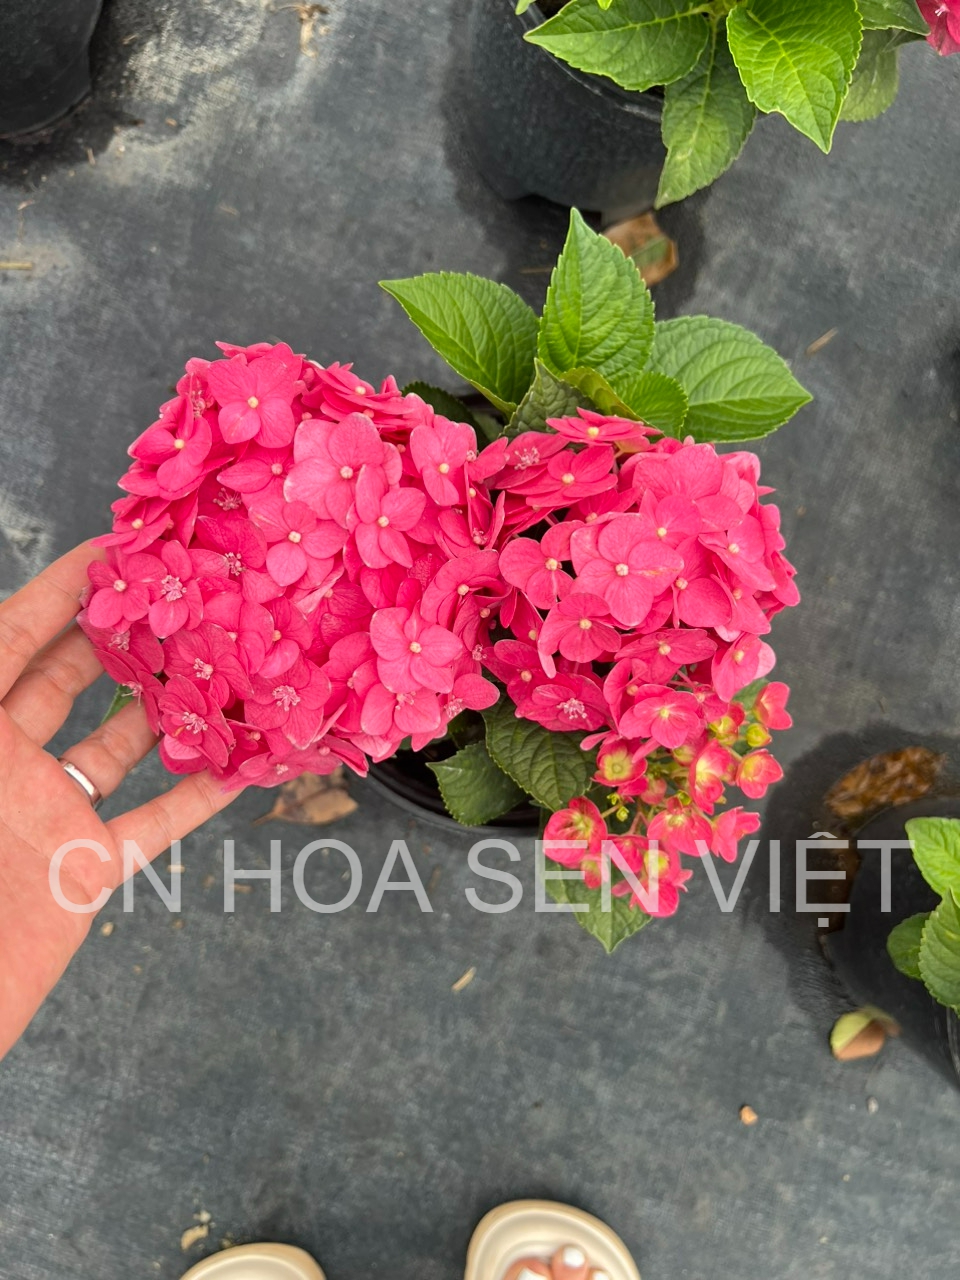 Hoa cẩm tú cầu màu sắc rực rỡ tại Đà Nẵng - Hoa Sen Việt